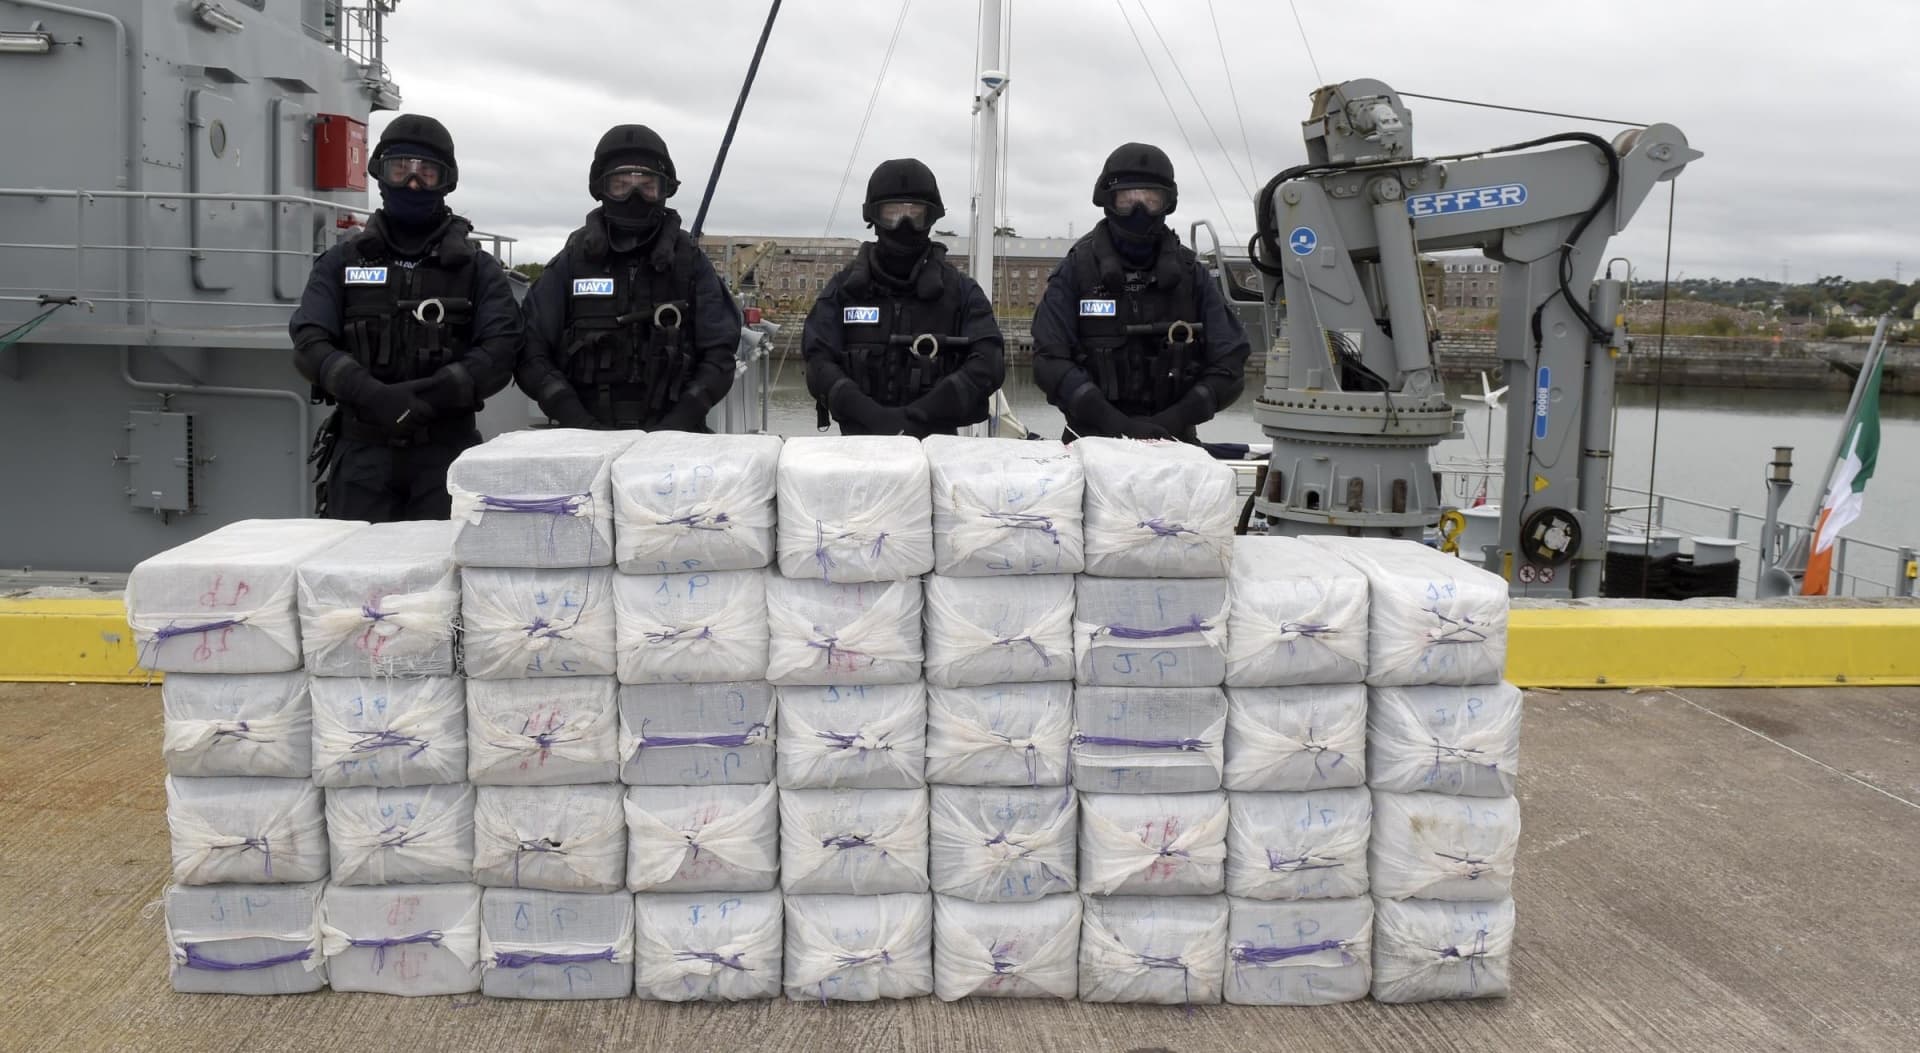 Csaknem 2,4 tonna kokaint foglaltak le